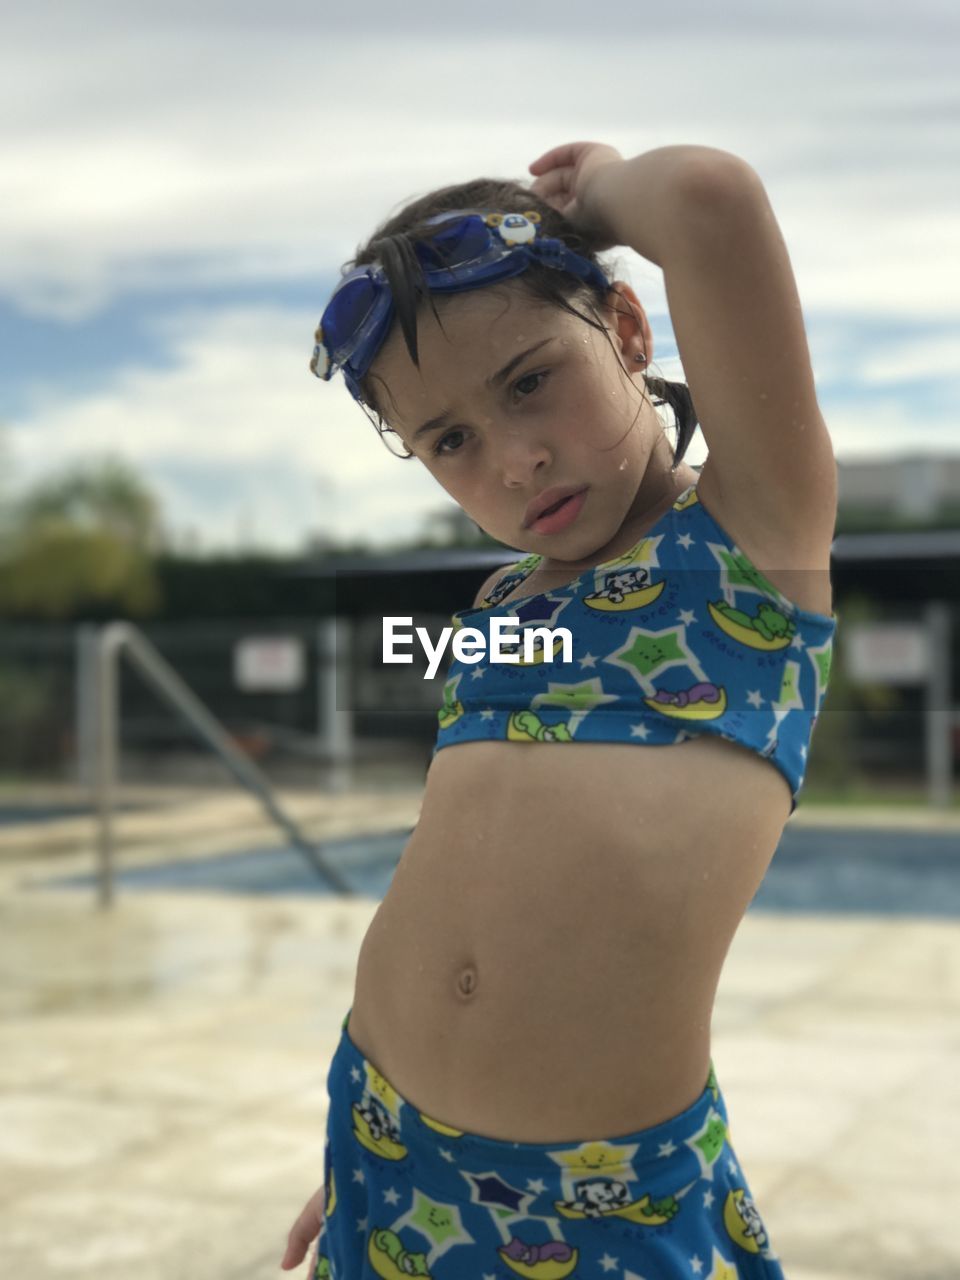 Cute girl wearing swimwear on poolside